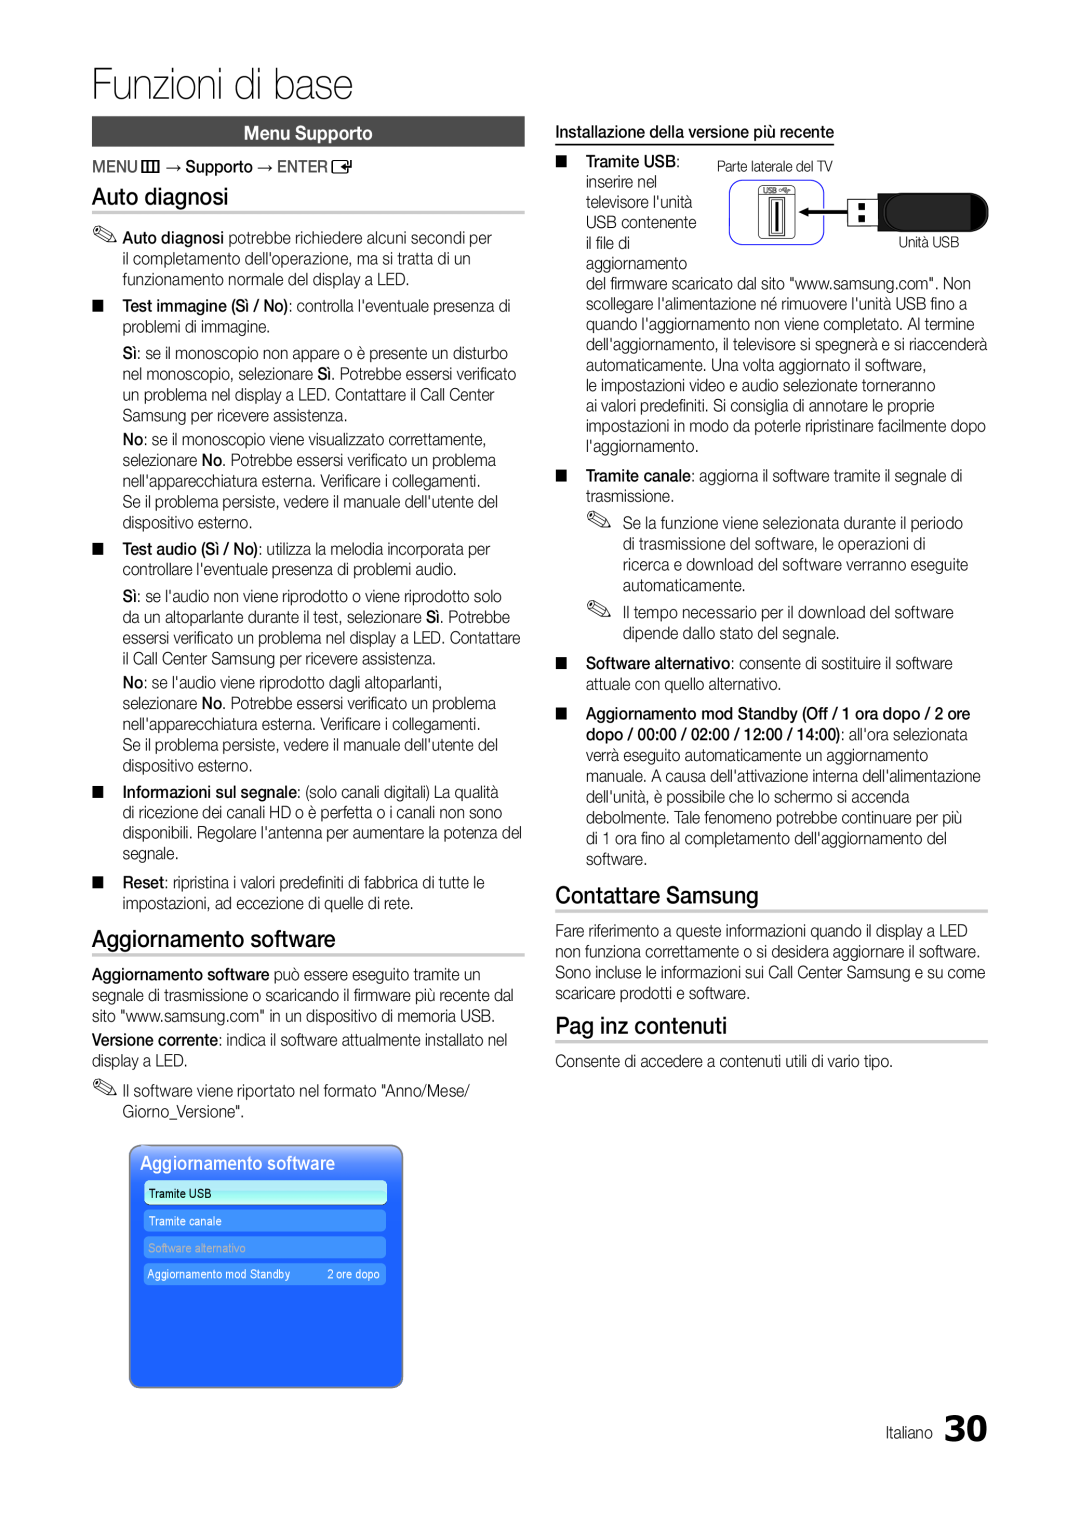 Samsung LT24B300EW/EN manual Auto diagnosi, Aggiornamento software, Contattare Samsung, Pag inz contenuti, Menu Supporto 